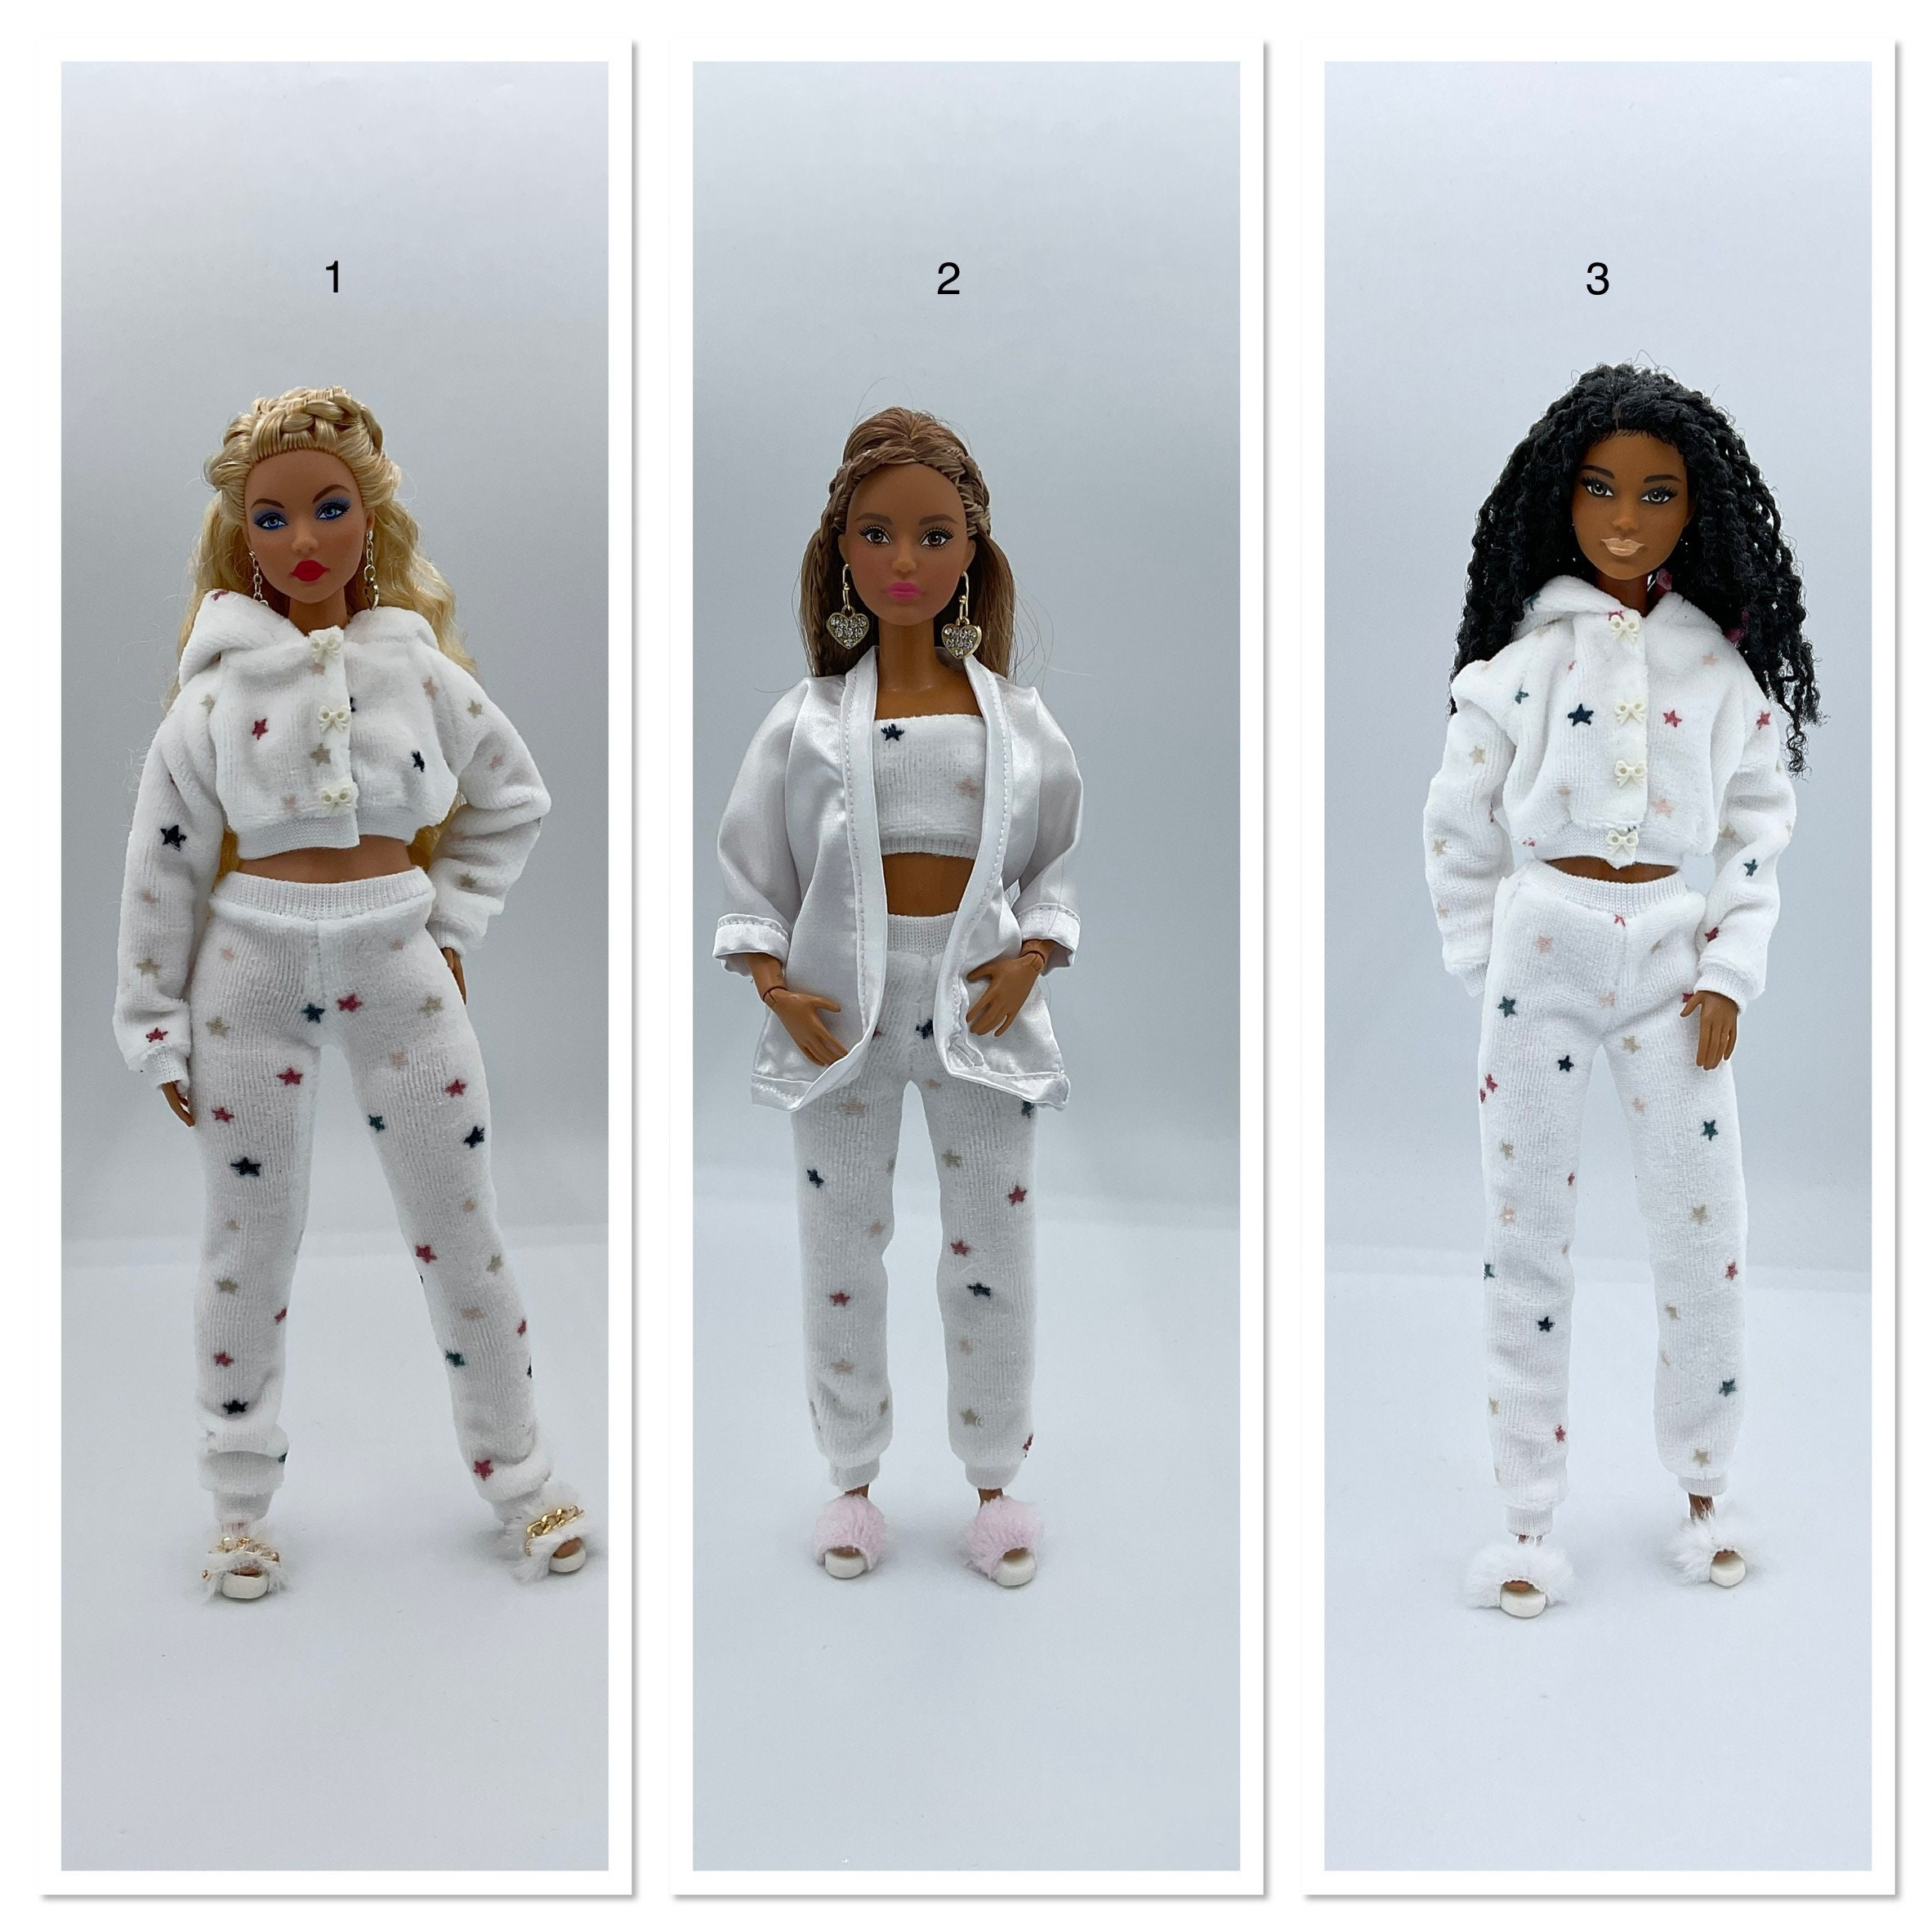 Barbie : nouveaux vêtements à coudre pour Barbie et Ken - Annabel Benilan